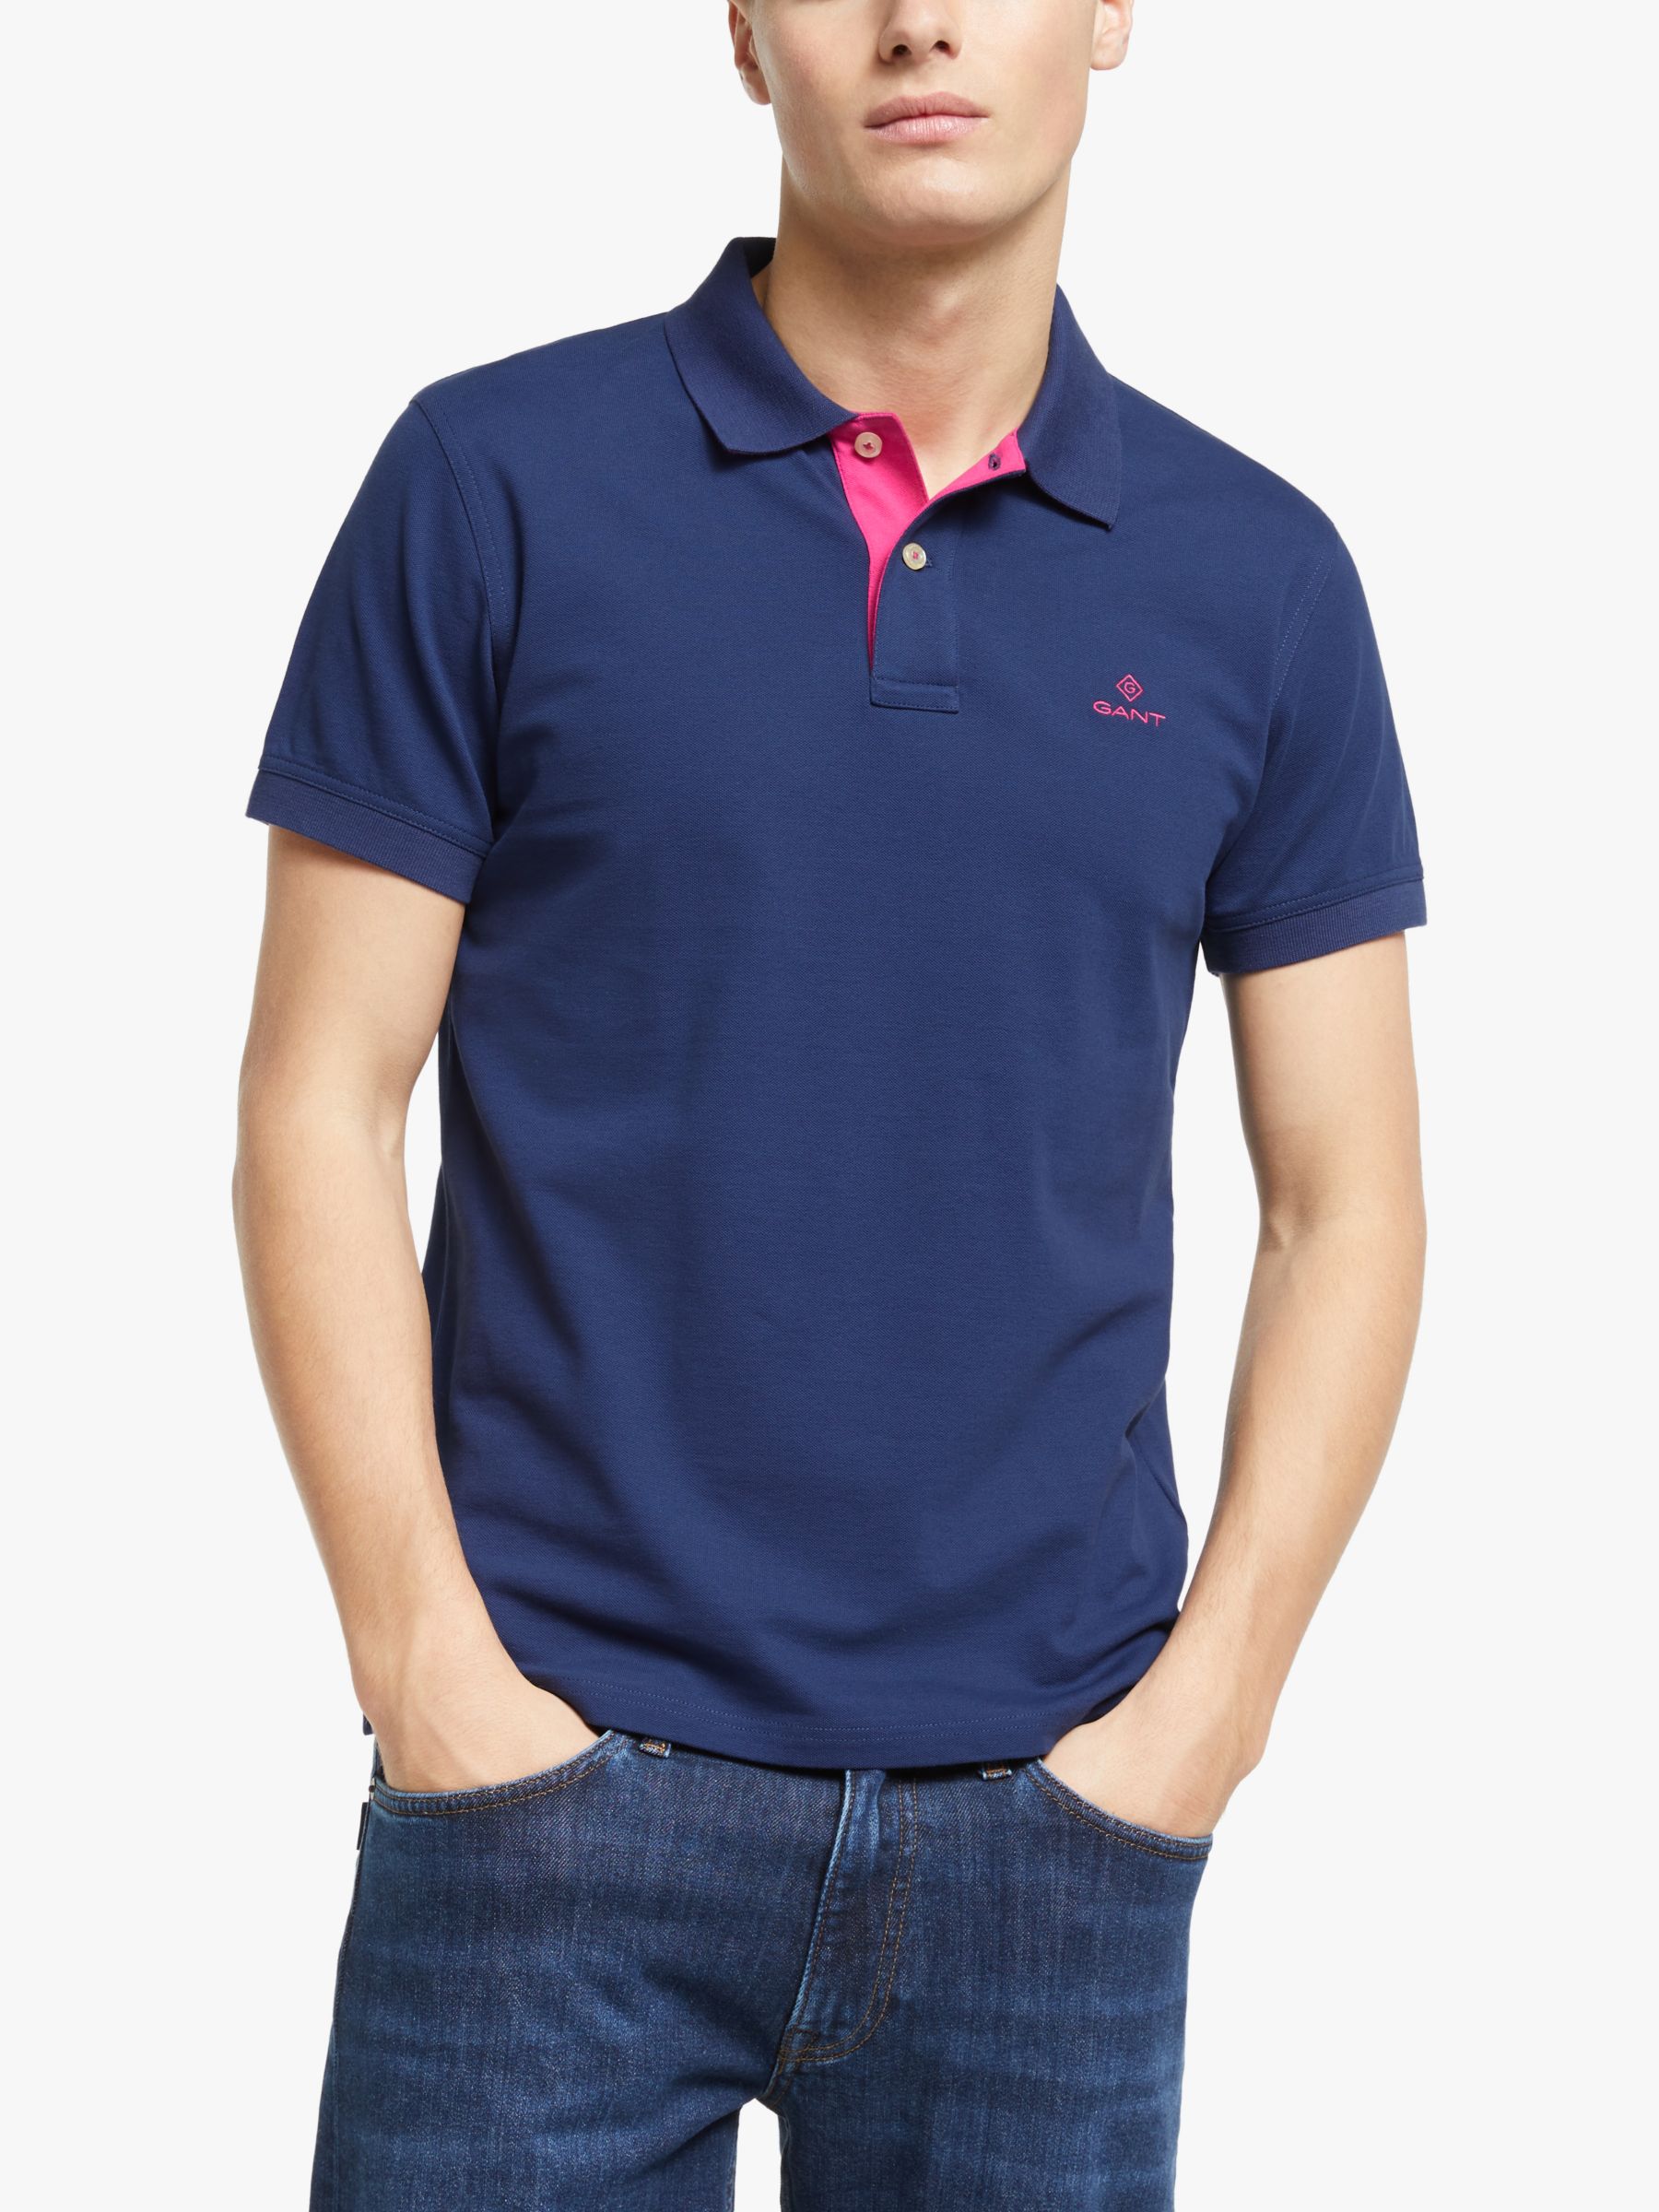 GANT Contrast Collar Pique Short Sleeve Polo Shirt